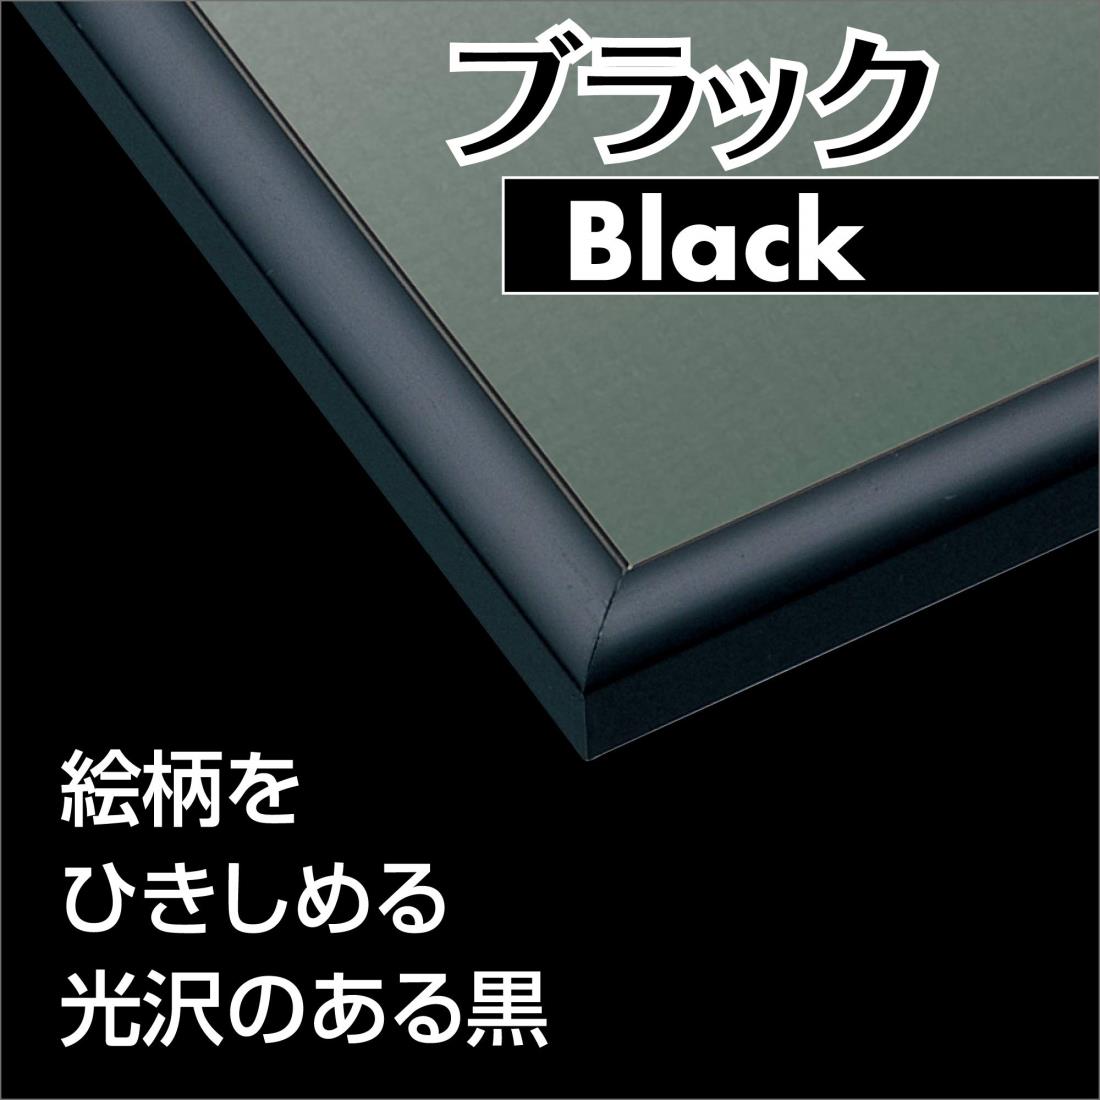 エポック社 アルミ製パズルフレーム パネルマックス ブラック (51x73.5cm) UVカット仕様 パズル Frame 額縁 EPOCH ひも 2